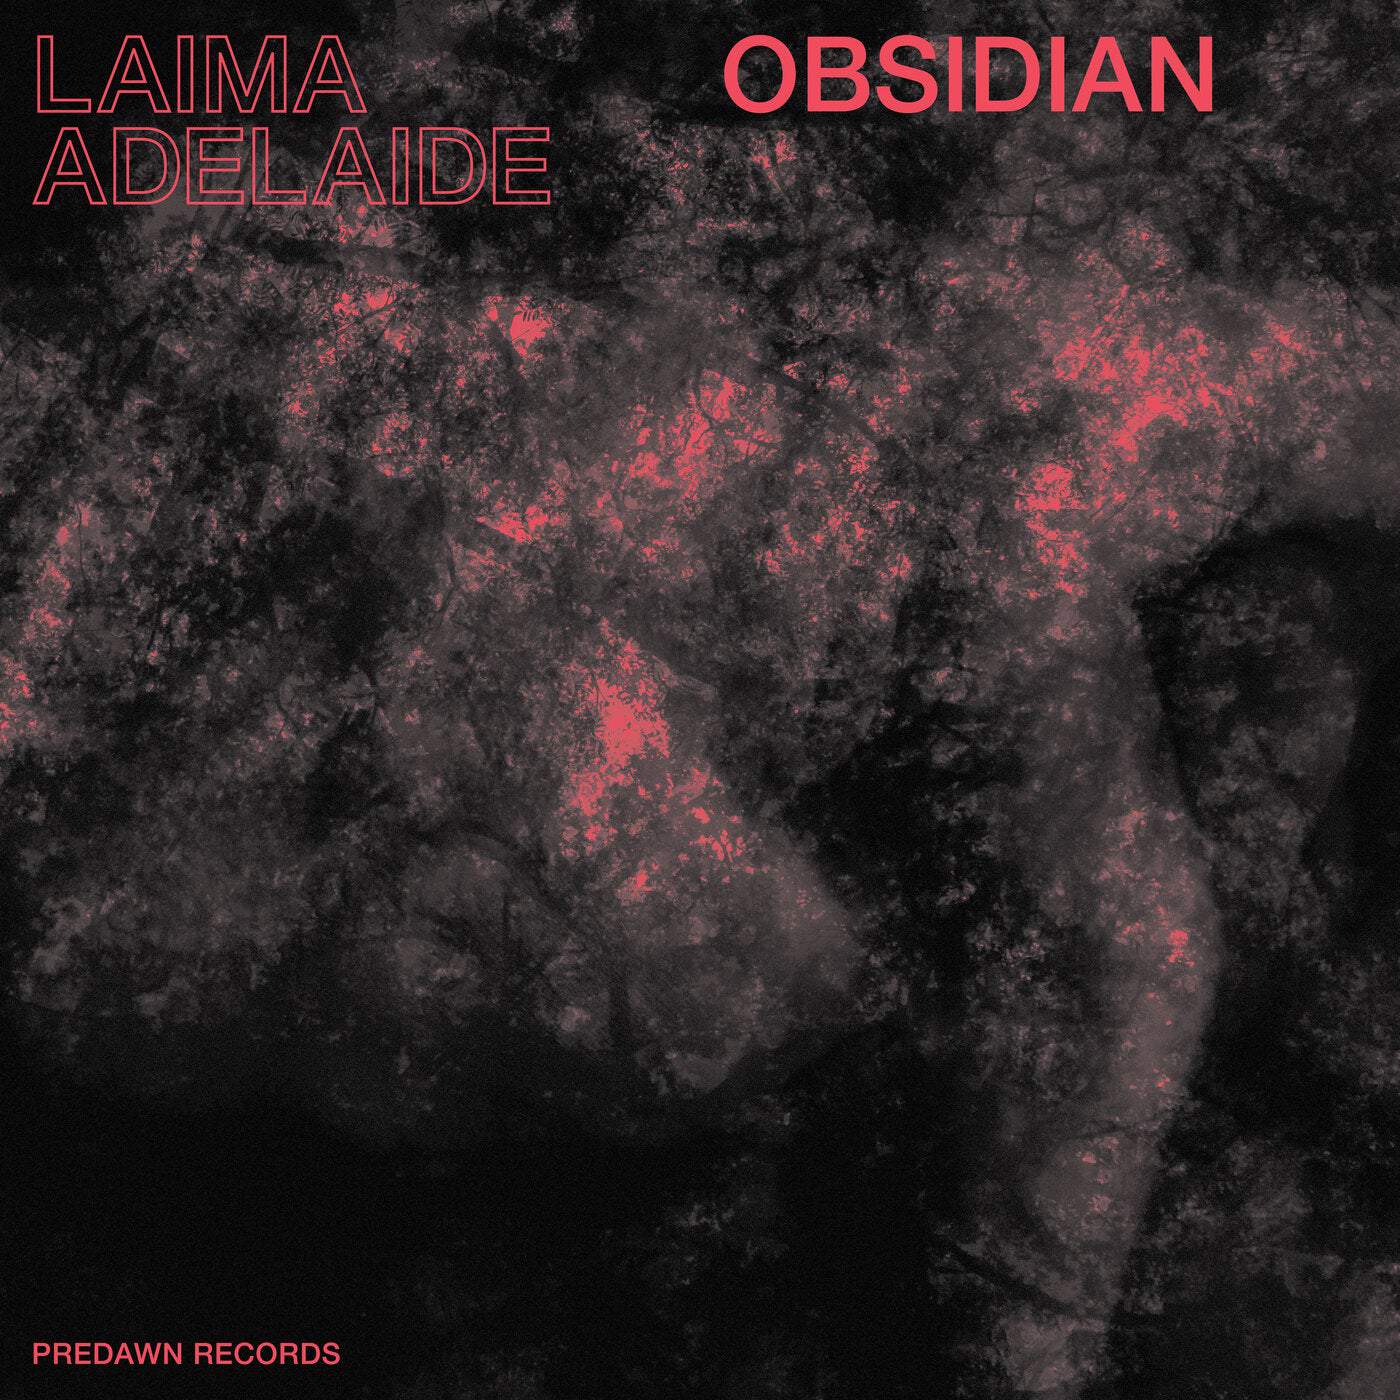 image cover: Laima Adelaide - Obsidian / PRDWNV001